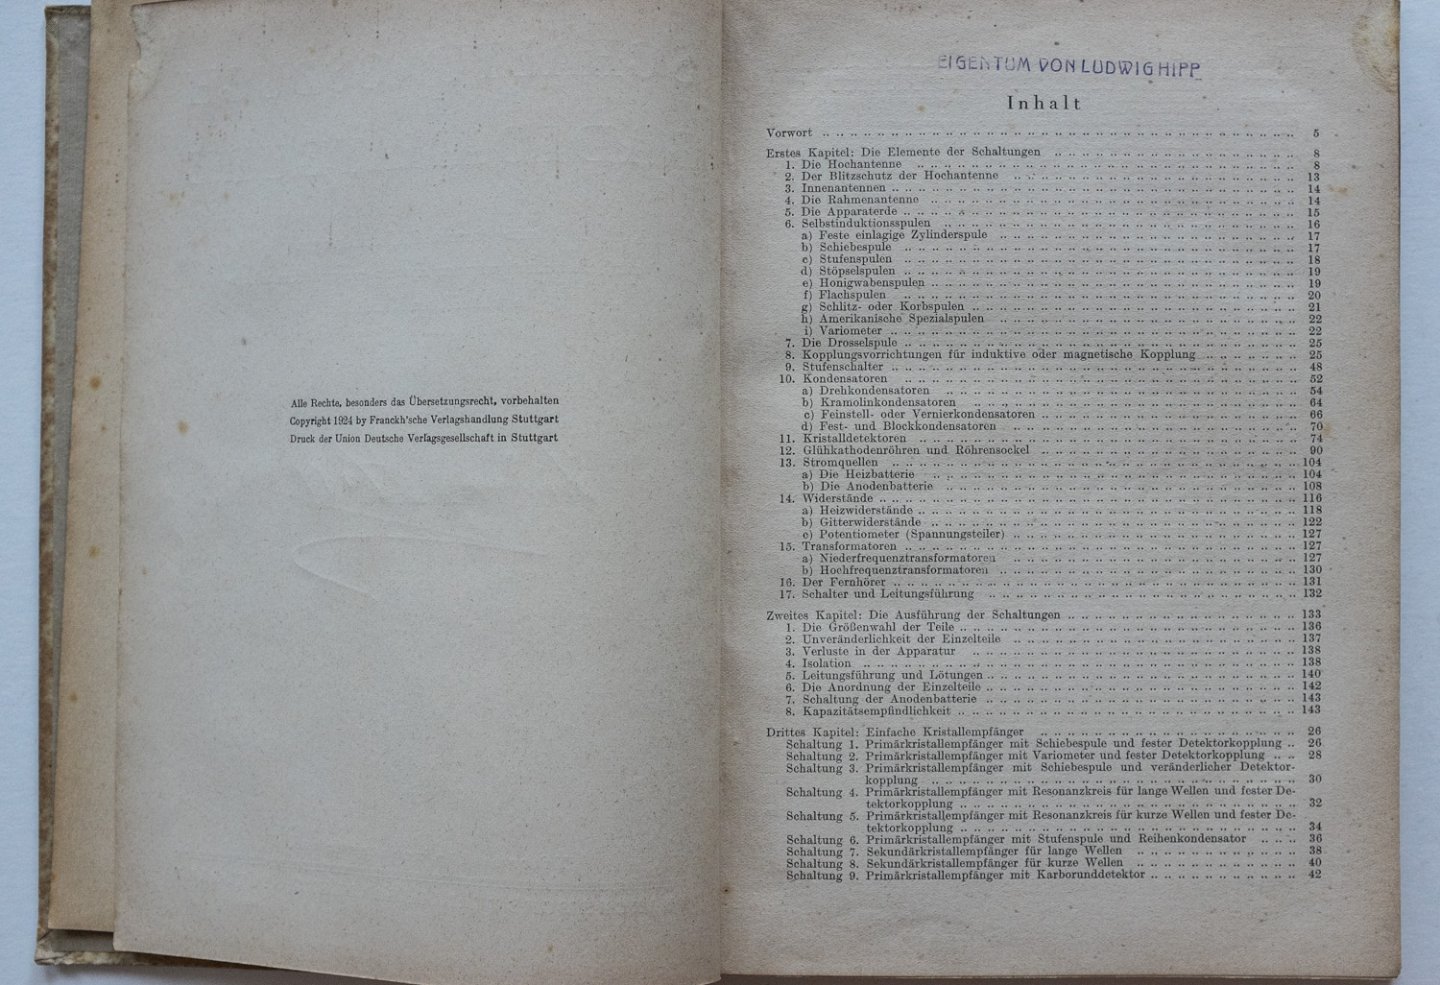 Günther, Hanns - Schaltungsbuch für Radioamateure, 50 erprobte Radioschaltungen zur Selbstanfertigung von Empfängern und Verstärkern aus käuflichen Einzelteilen